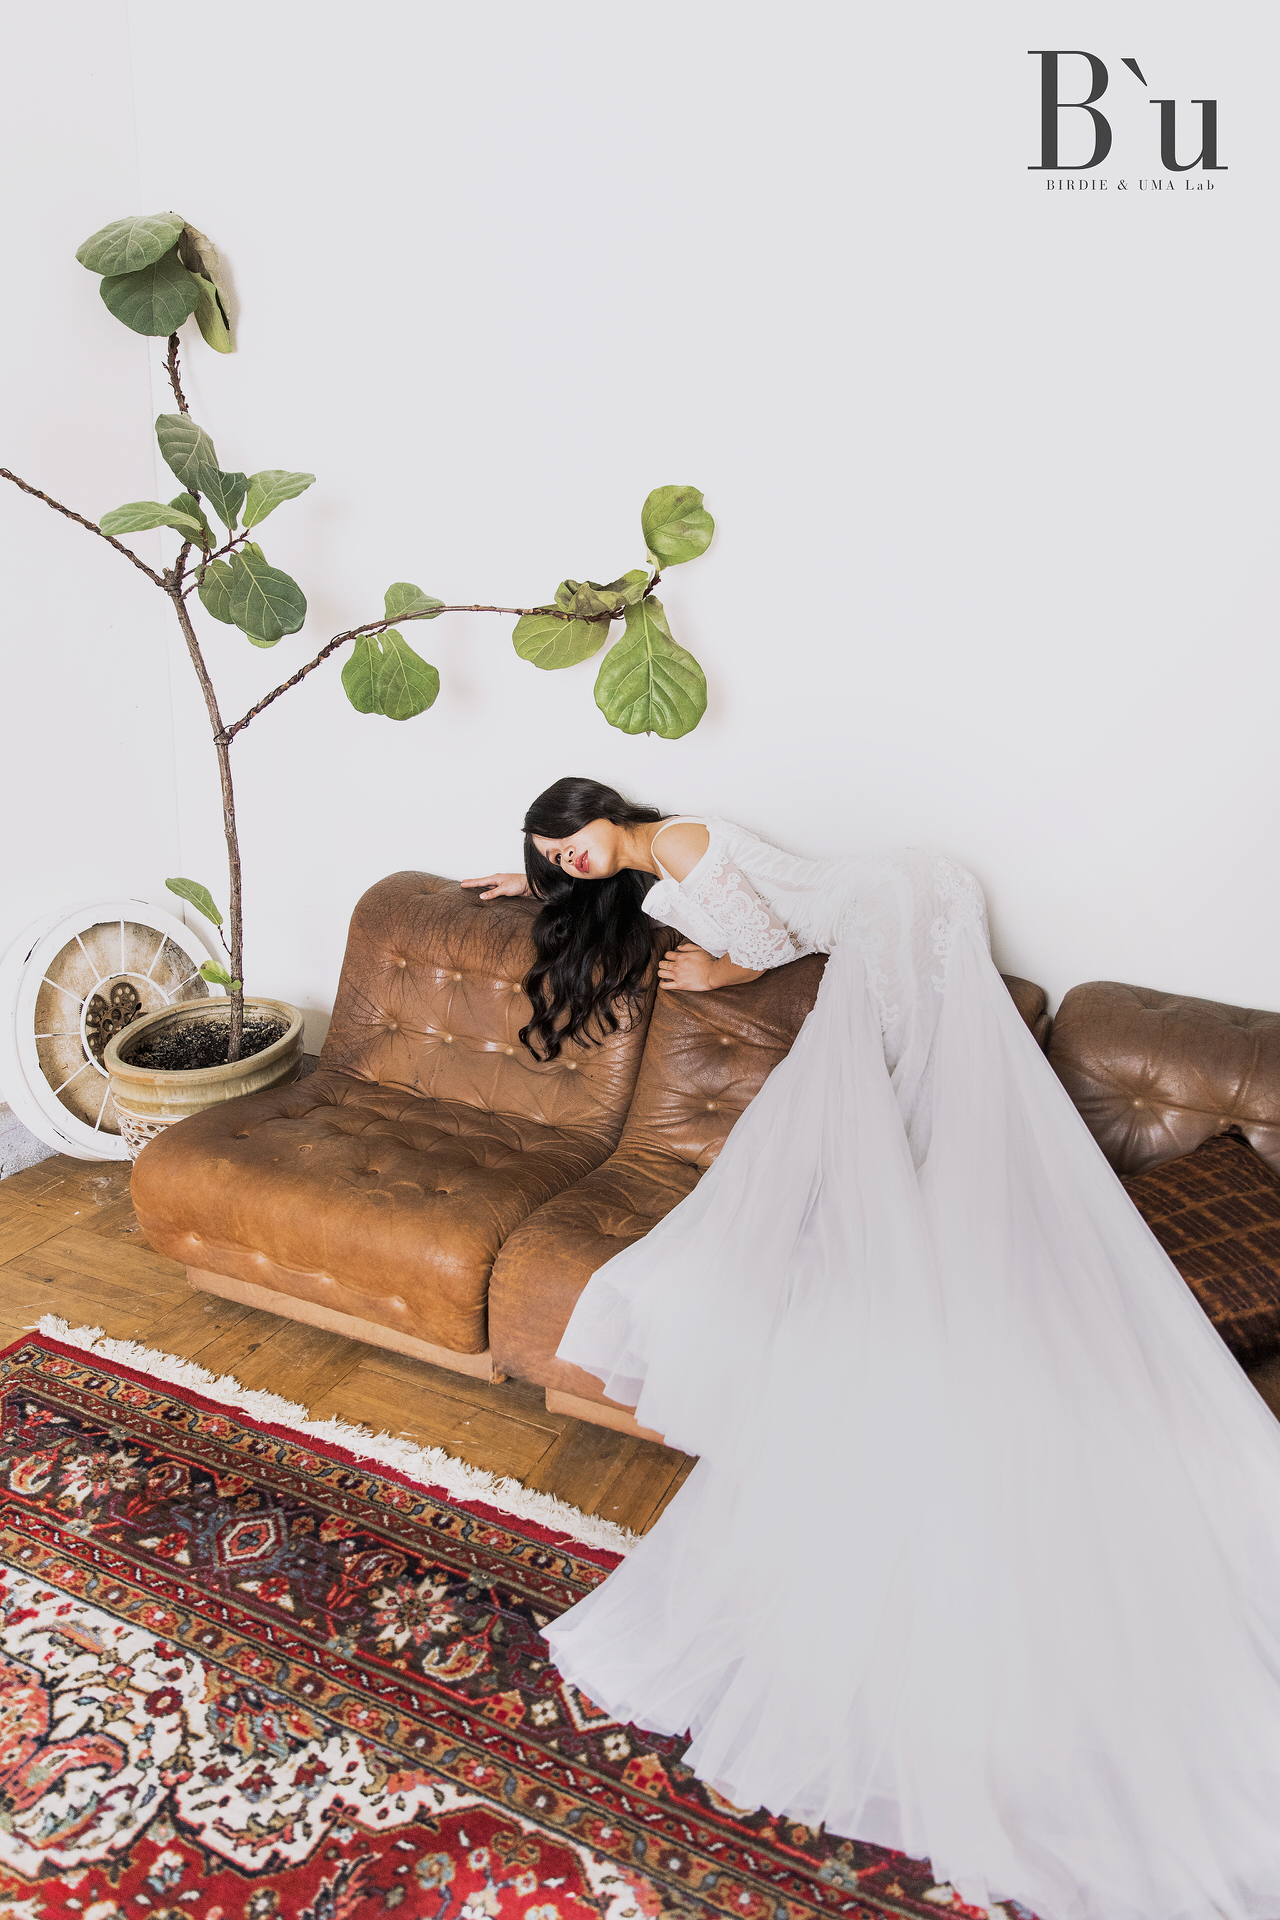 蘇鳥 Photography | 台中自助婚紗攝影 | 新人照片分享